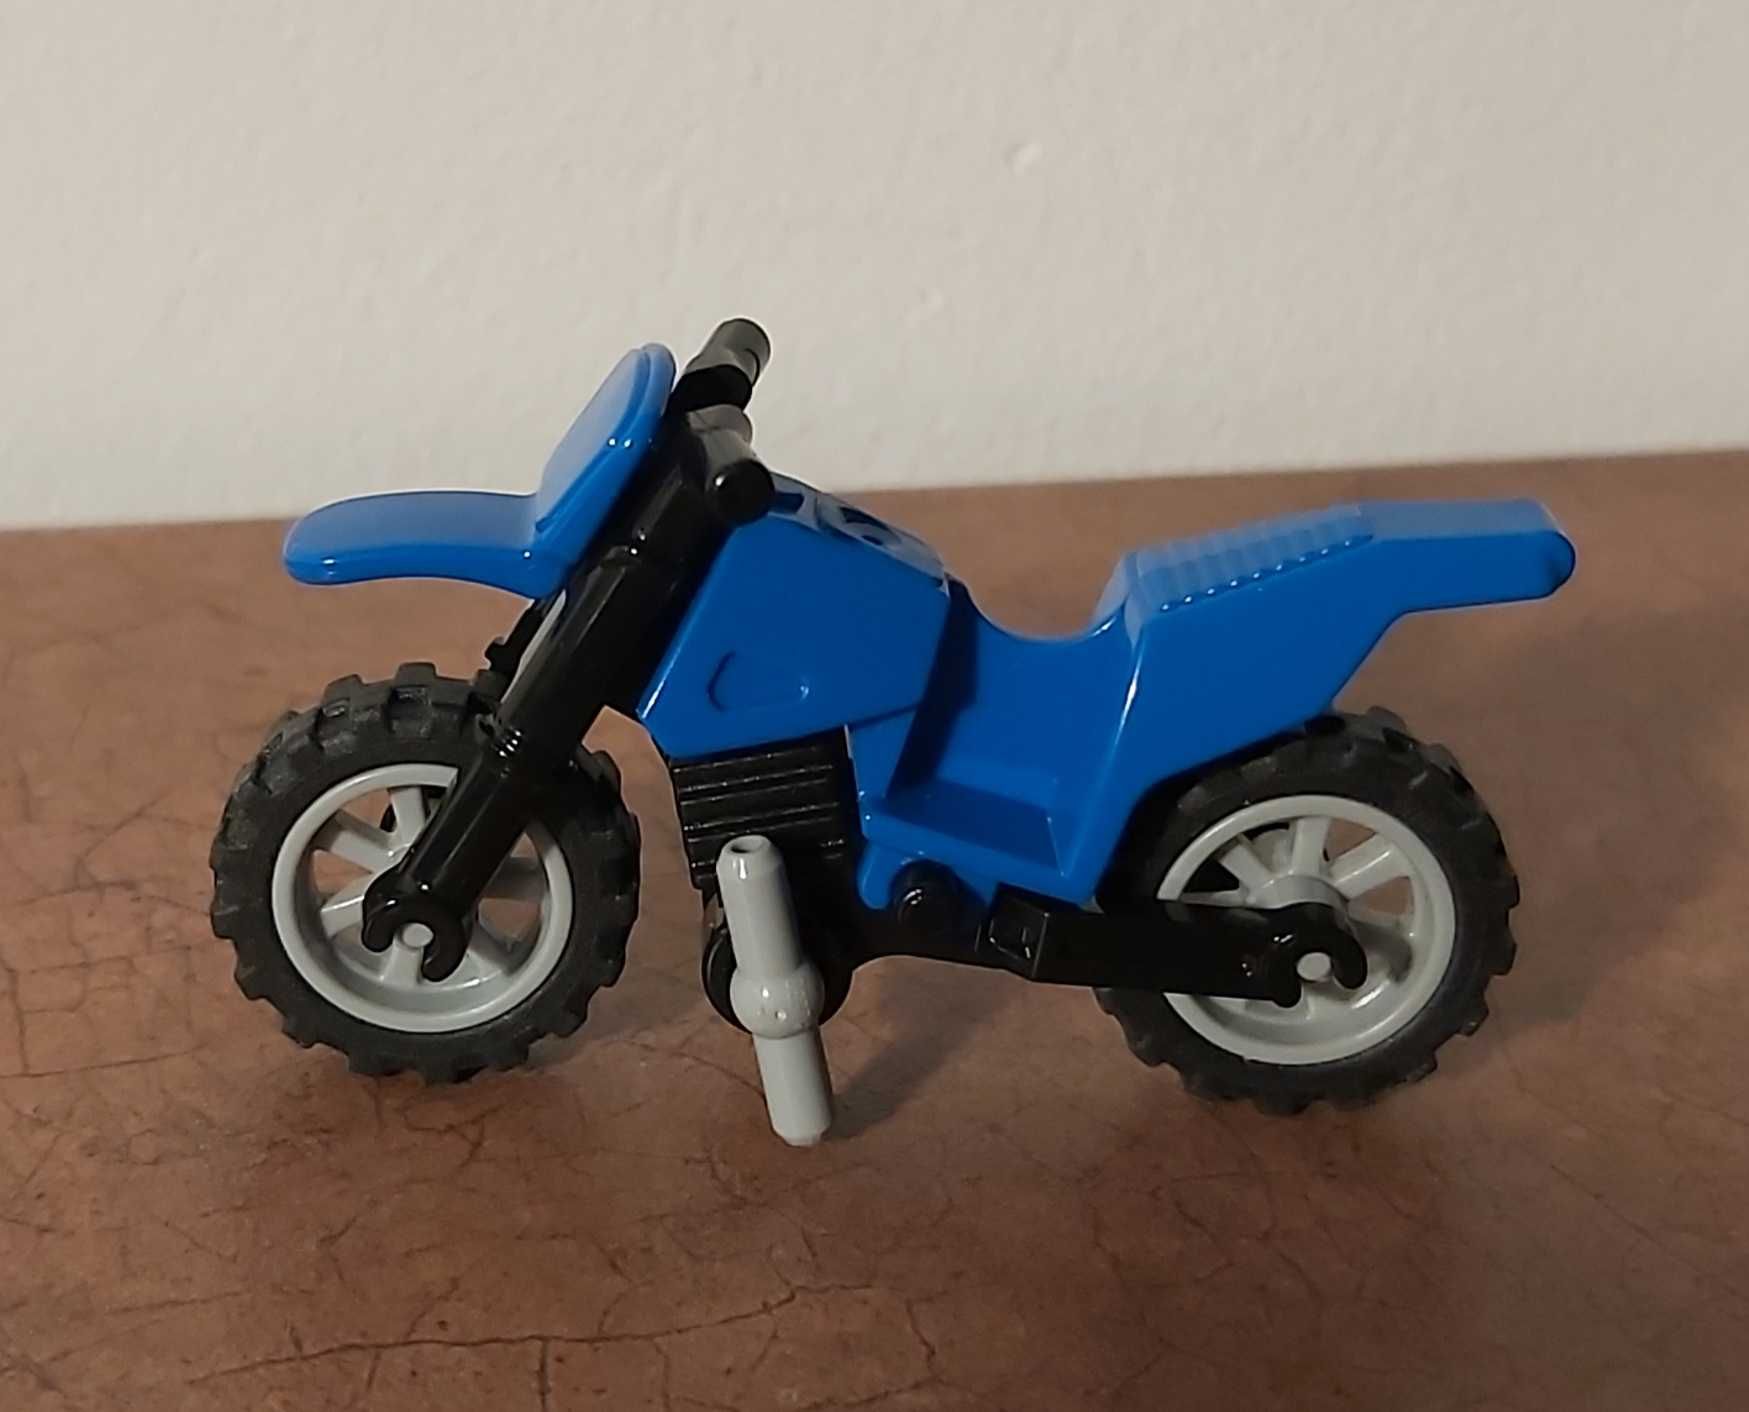 Lego City motocykl niebieski